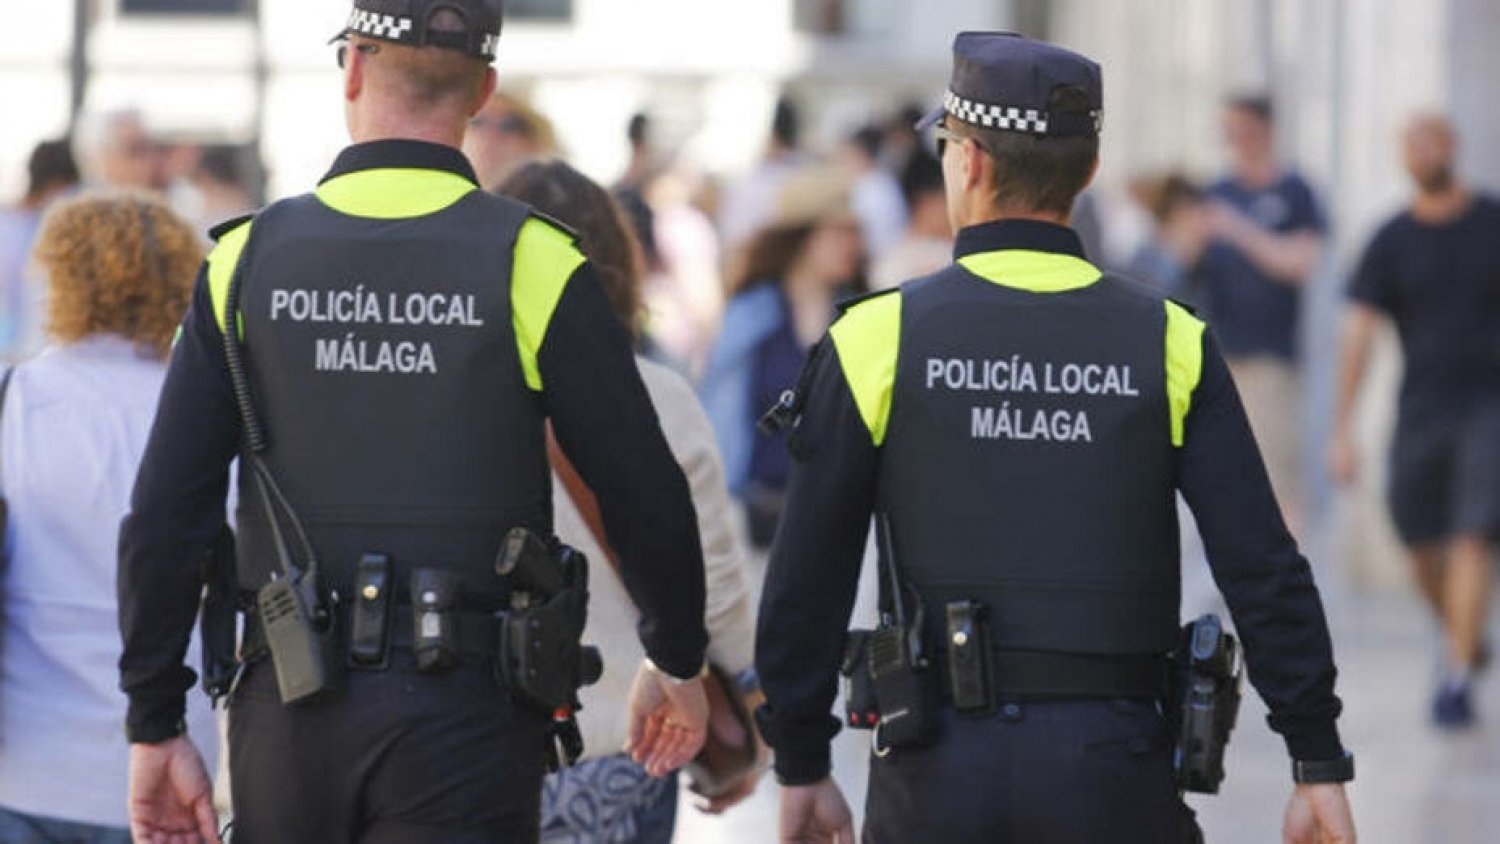 La Policía Local tramita 132 denuncias en materia de control de ruidos y convivencia en la última semana